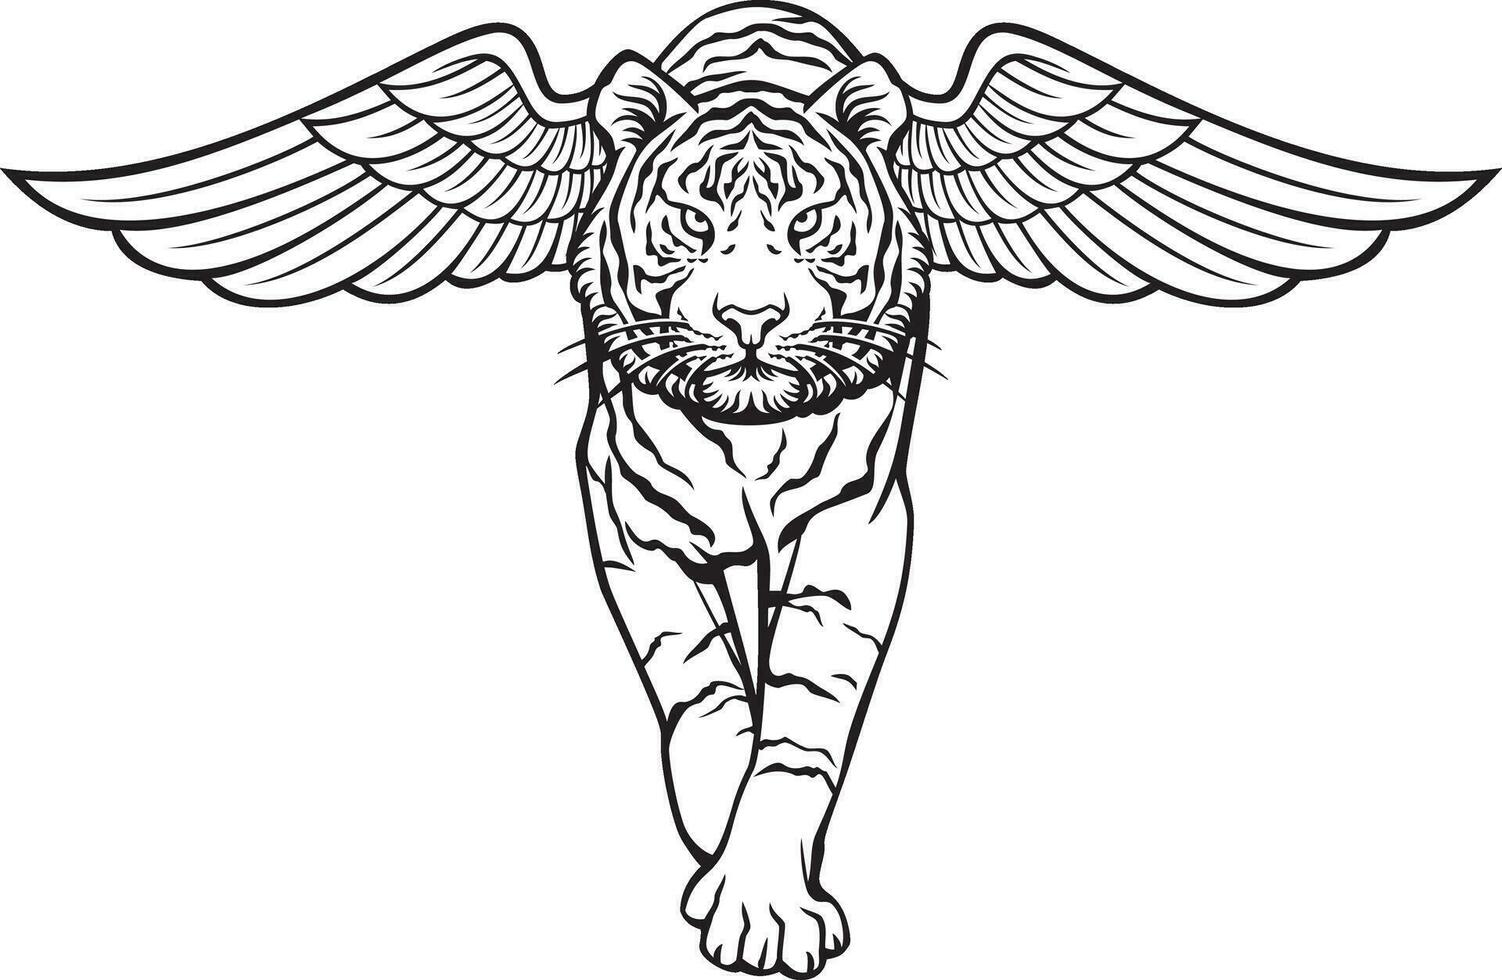 tigre caminhando com asas Preto e branco. vetor ilustração.